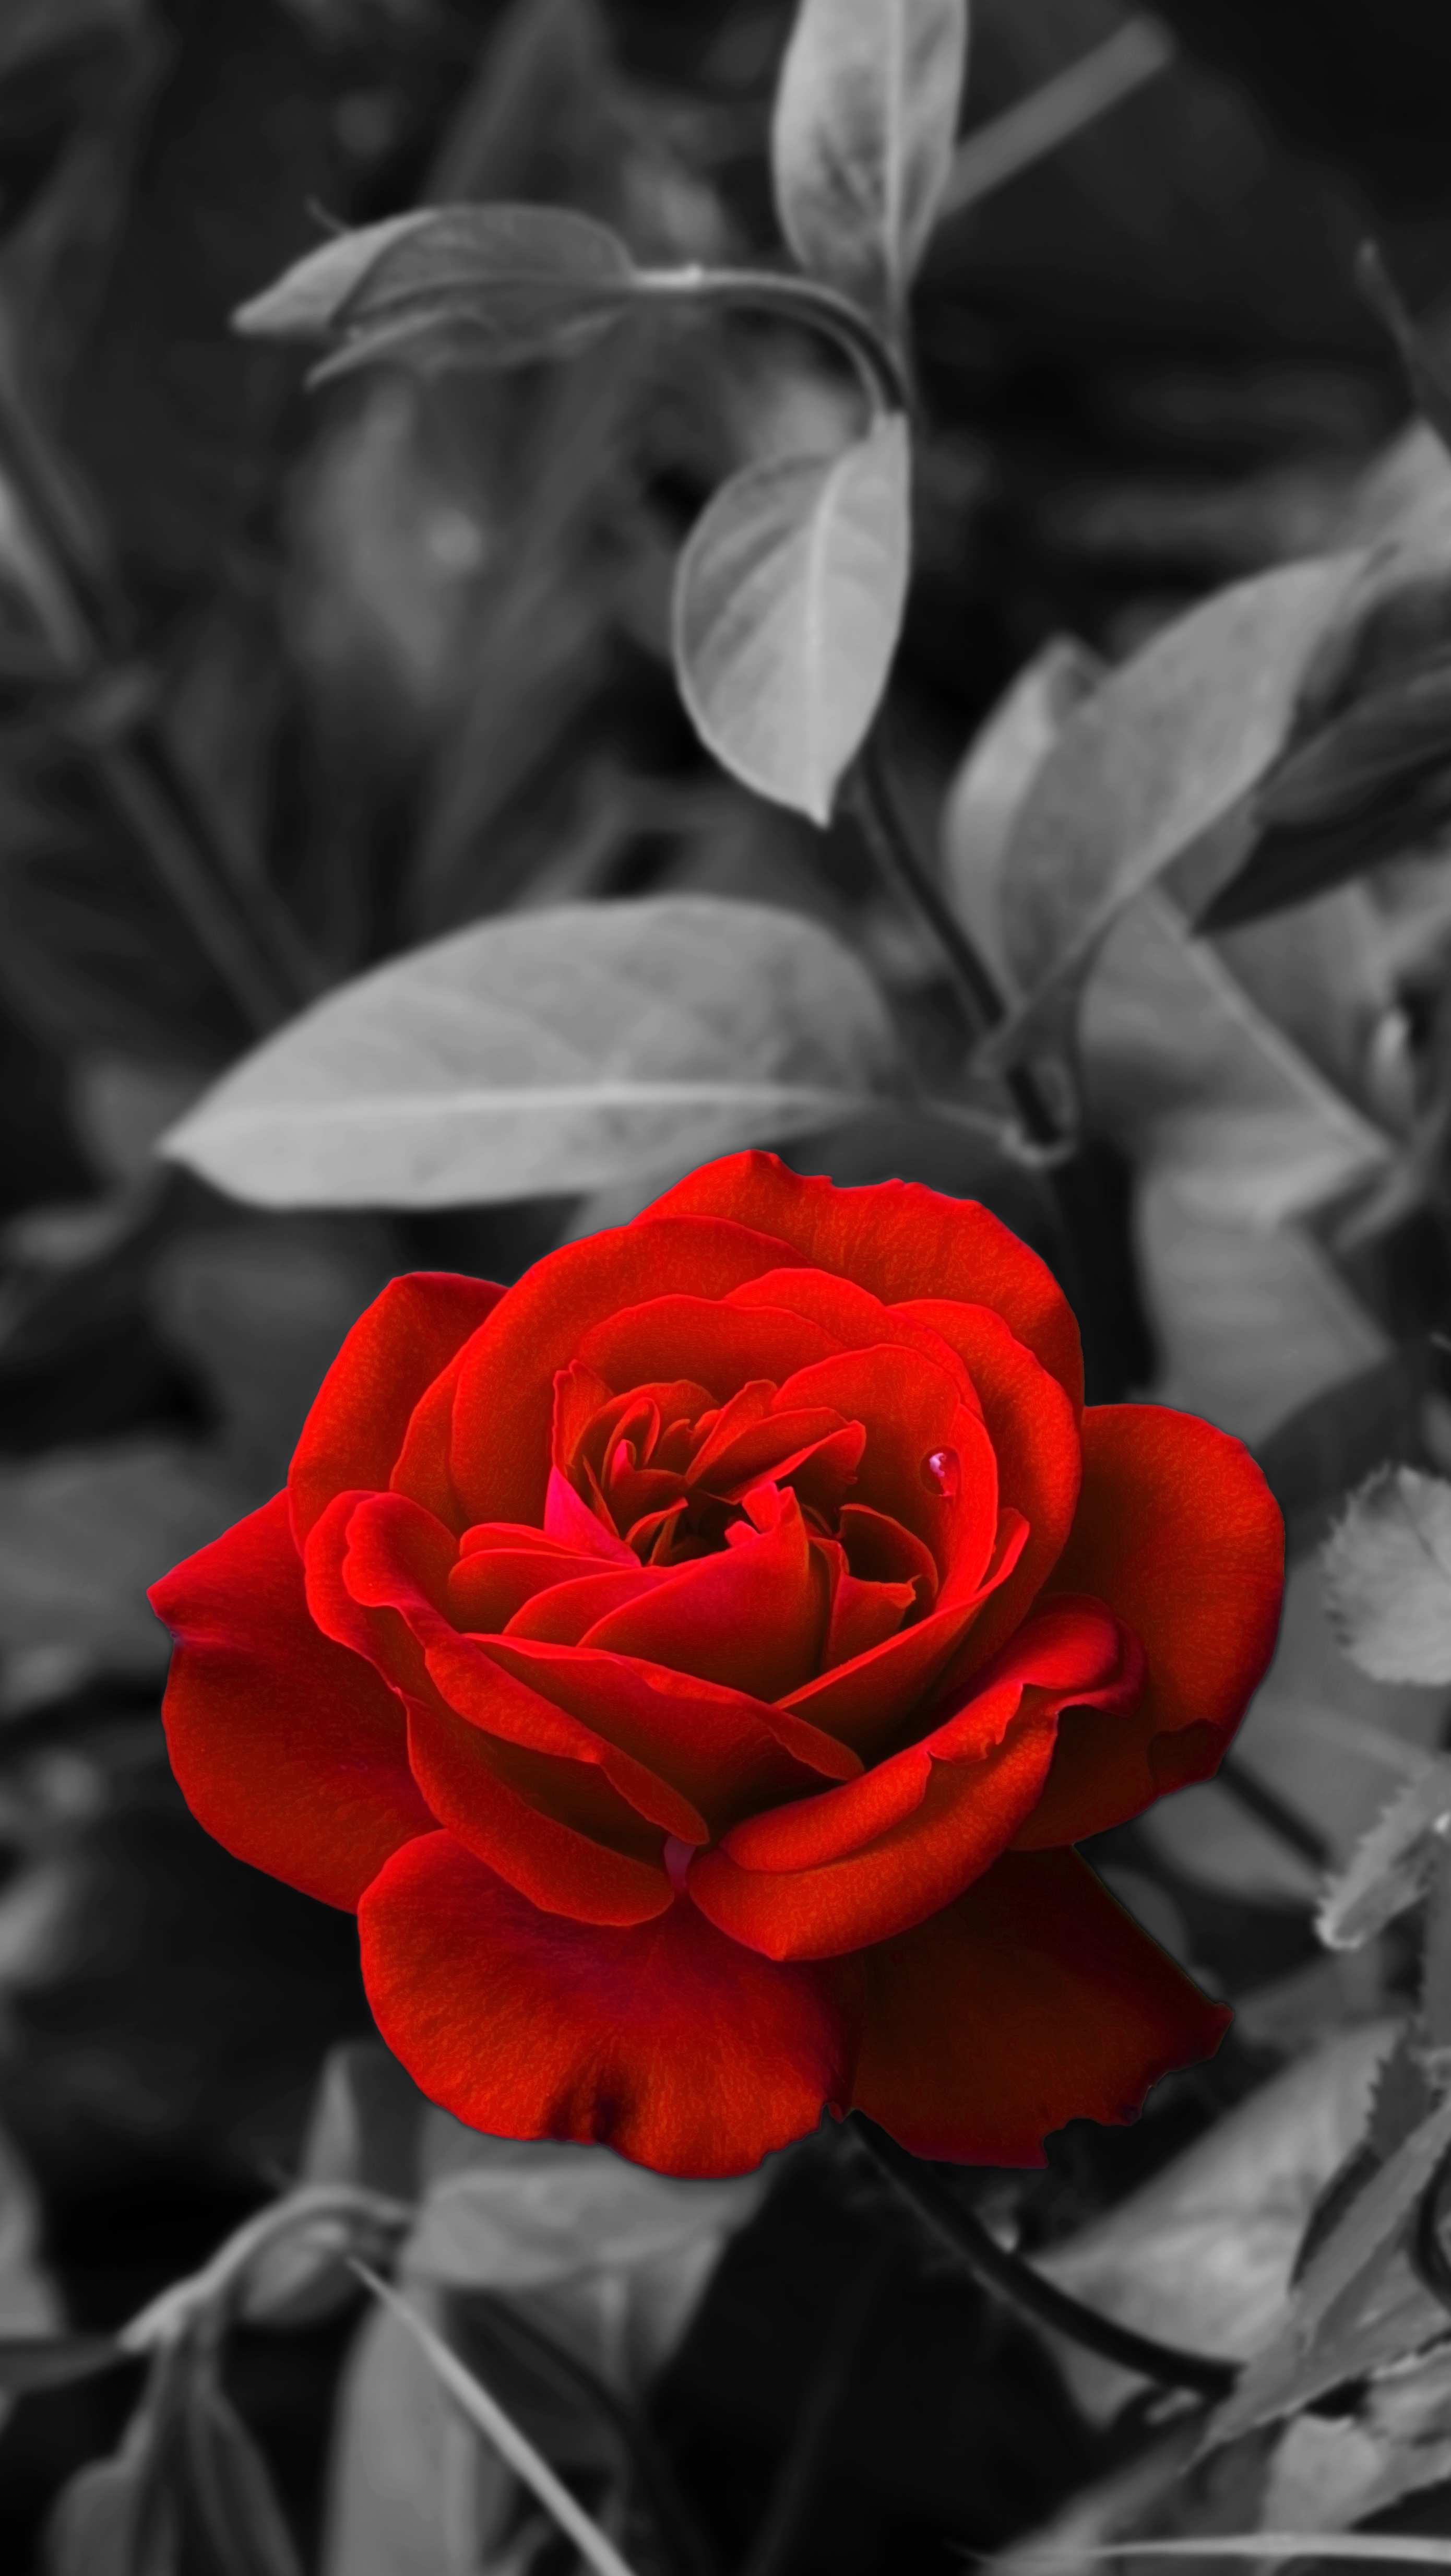 flowers, red, rose, rose flower, chb, bud, bw, garden 32K